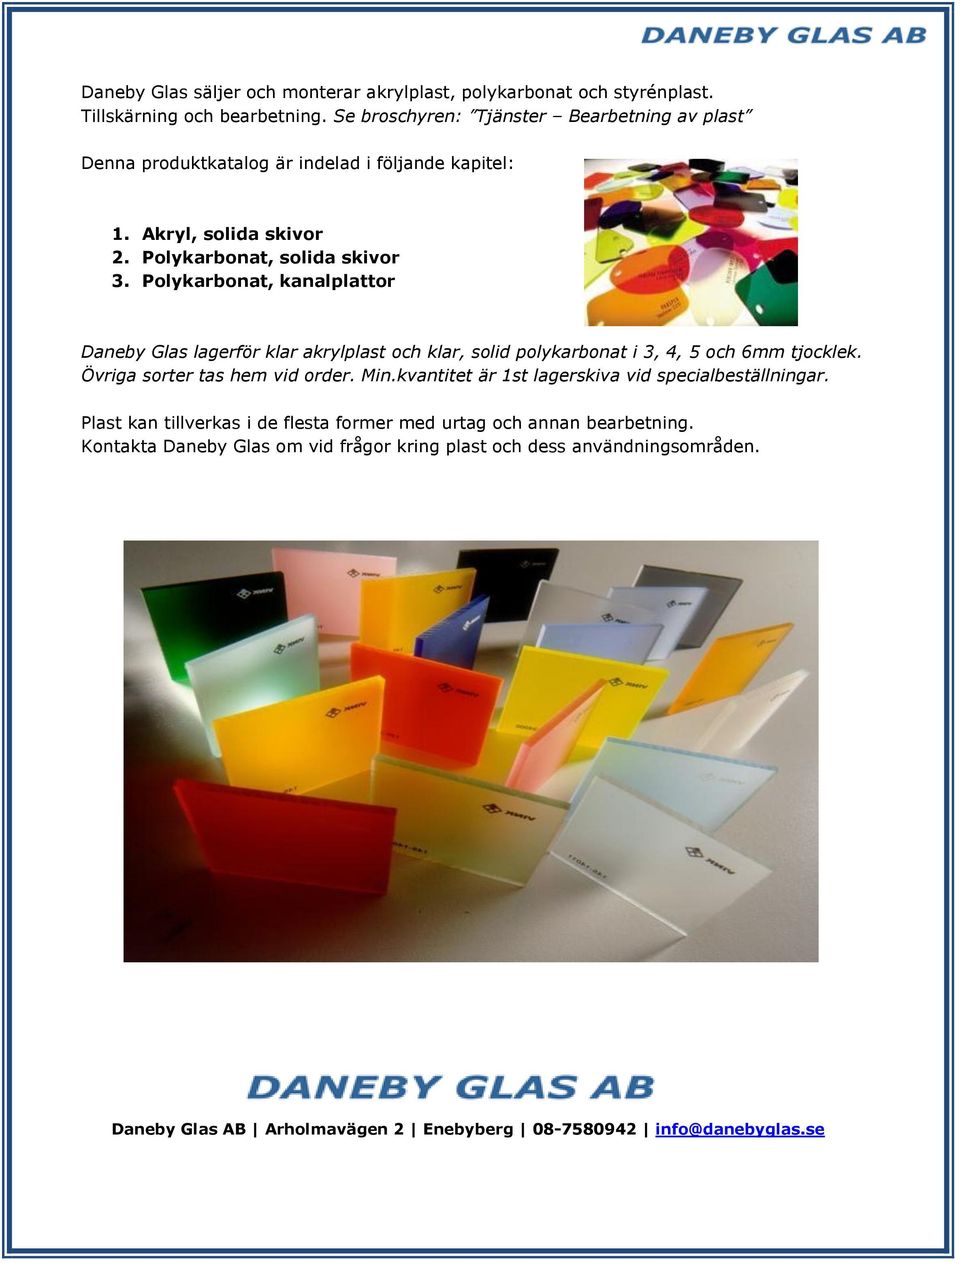 Polykarbonat, kanalplattor Daneby Glas lagerför klar akrylplast och klar, solid polykarbonat i 3, 4, 5 och 6mm tjocklek. Övriga sorter tas hem vid order. Min.